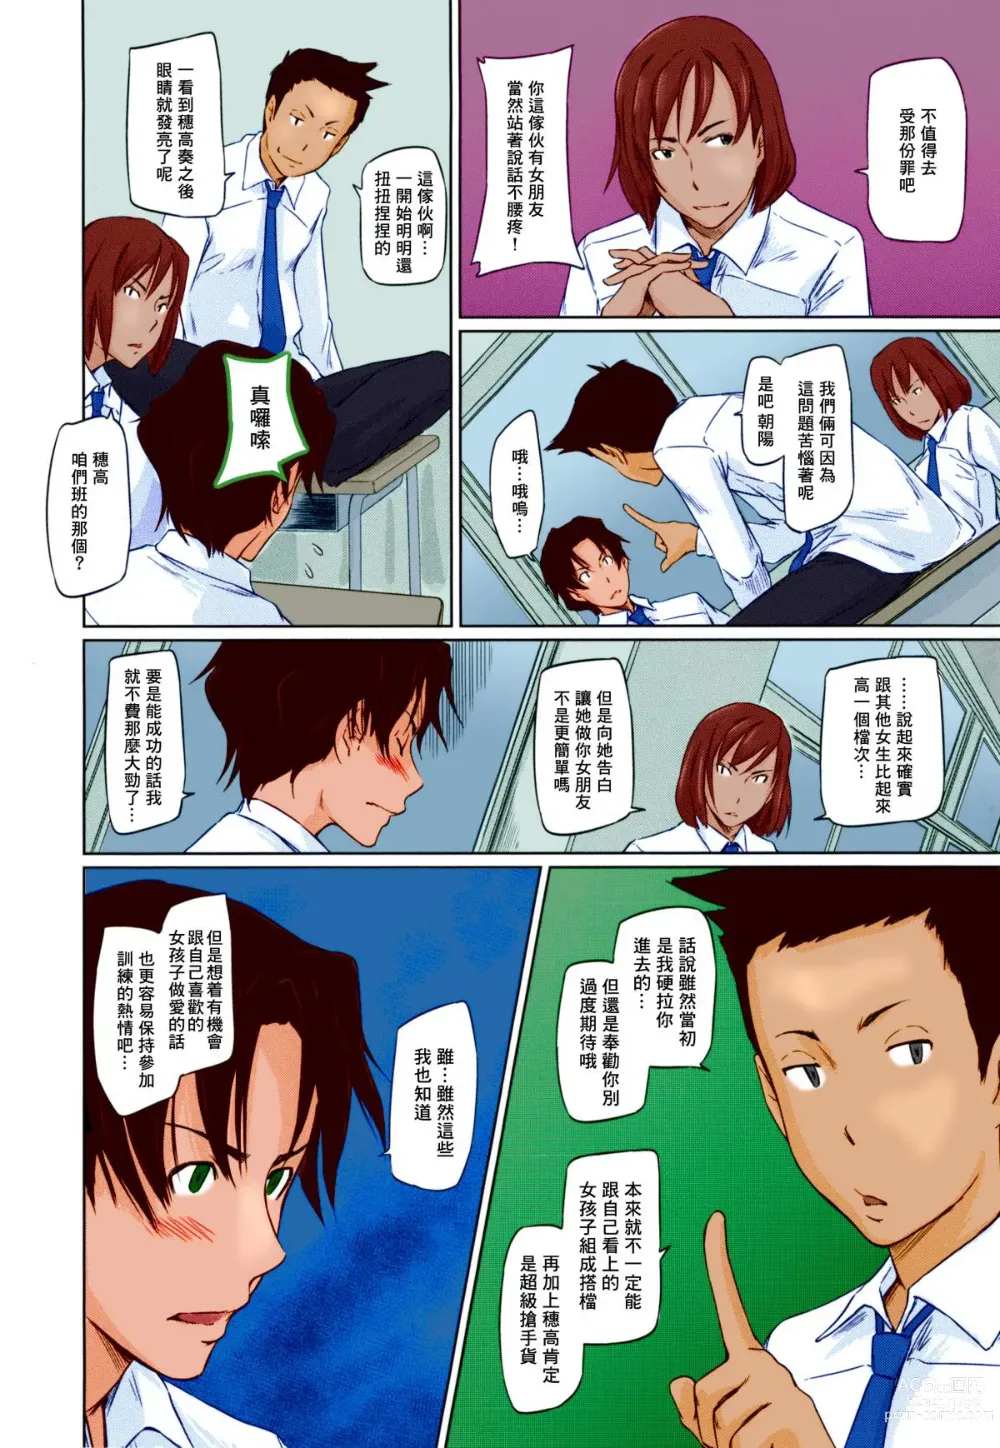 Page 11 of manga Suki ni nattara itchokusen!